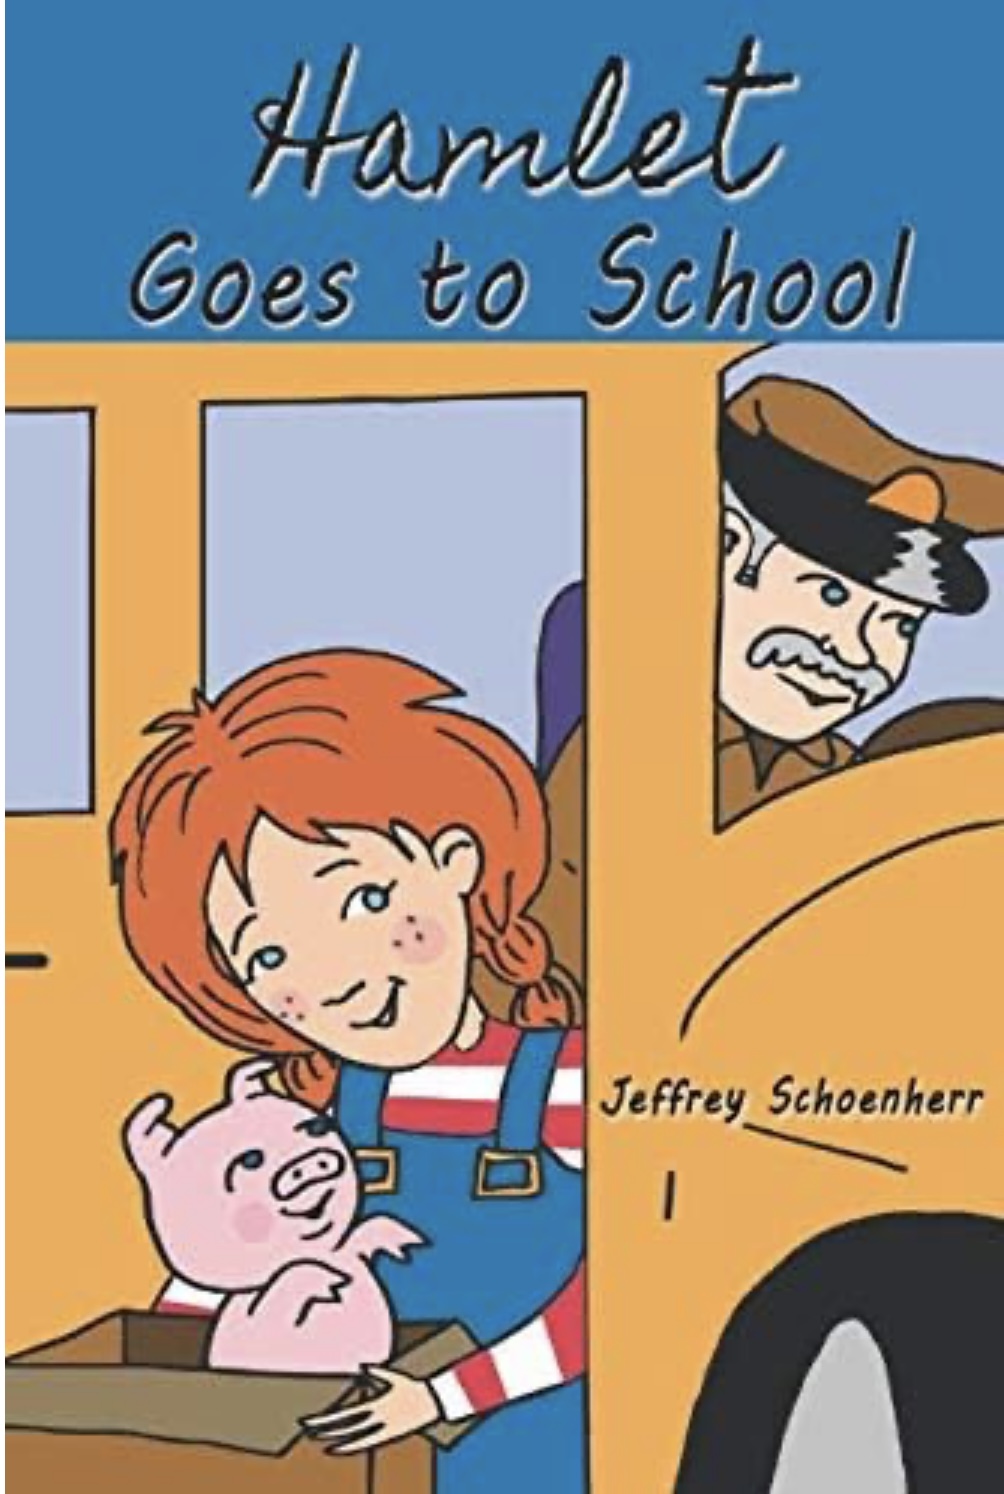 Experience The Heartwarming Tale Of Friendship, "Hamlet Goes To School" By Jeffrey Schoenherr